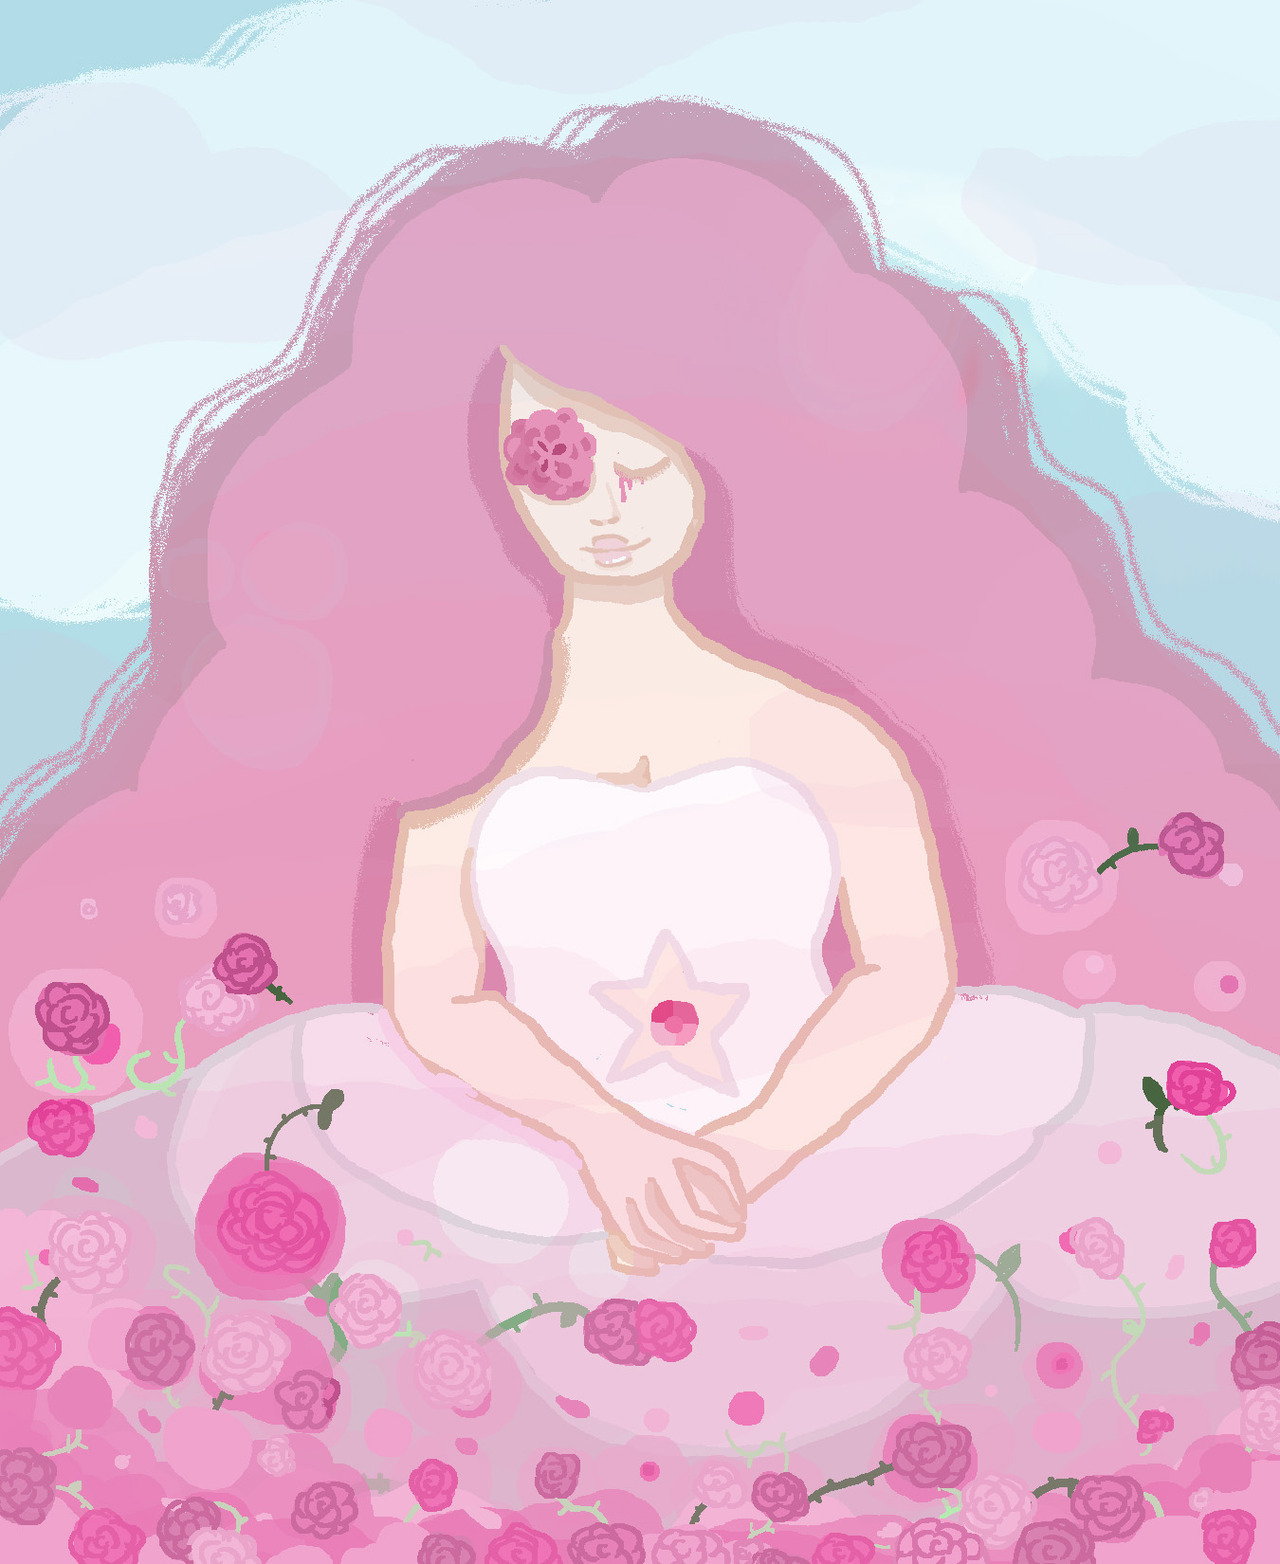 I drew rose quartz from SU